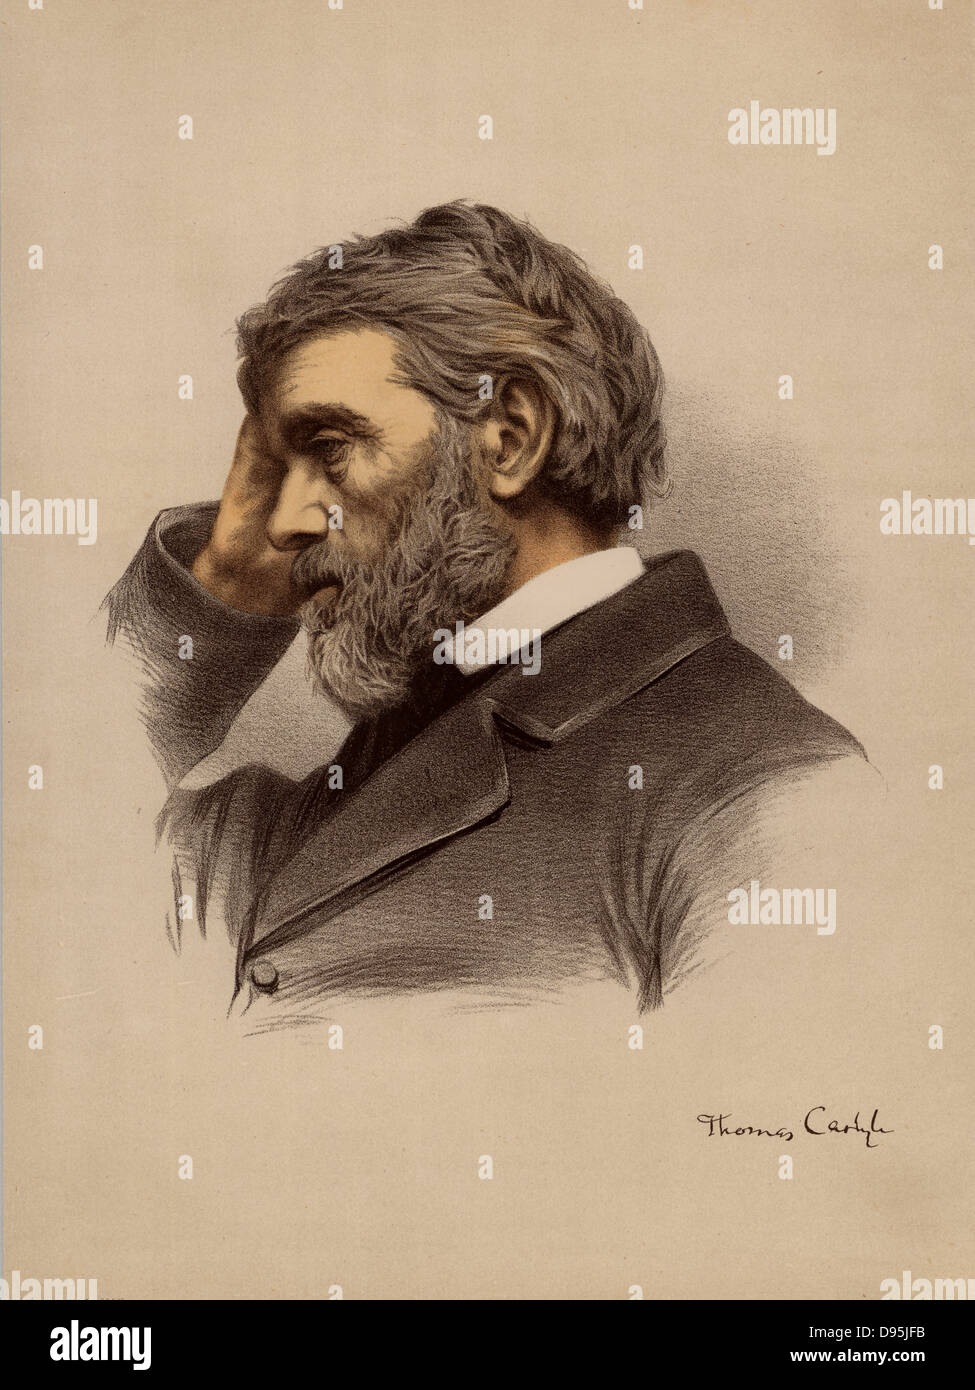 Thomas Carlyle (1795-1881) origine écossaise, historien et essayiste britannique. À partir de 'Le National Portrait Gallery" (Londres, c1880). Lithographie teintée. Banque D'Images